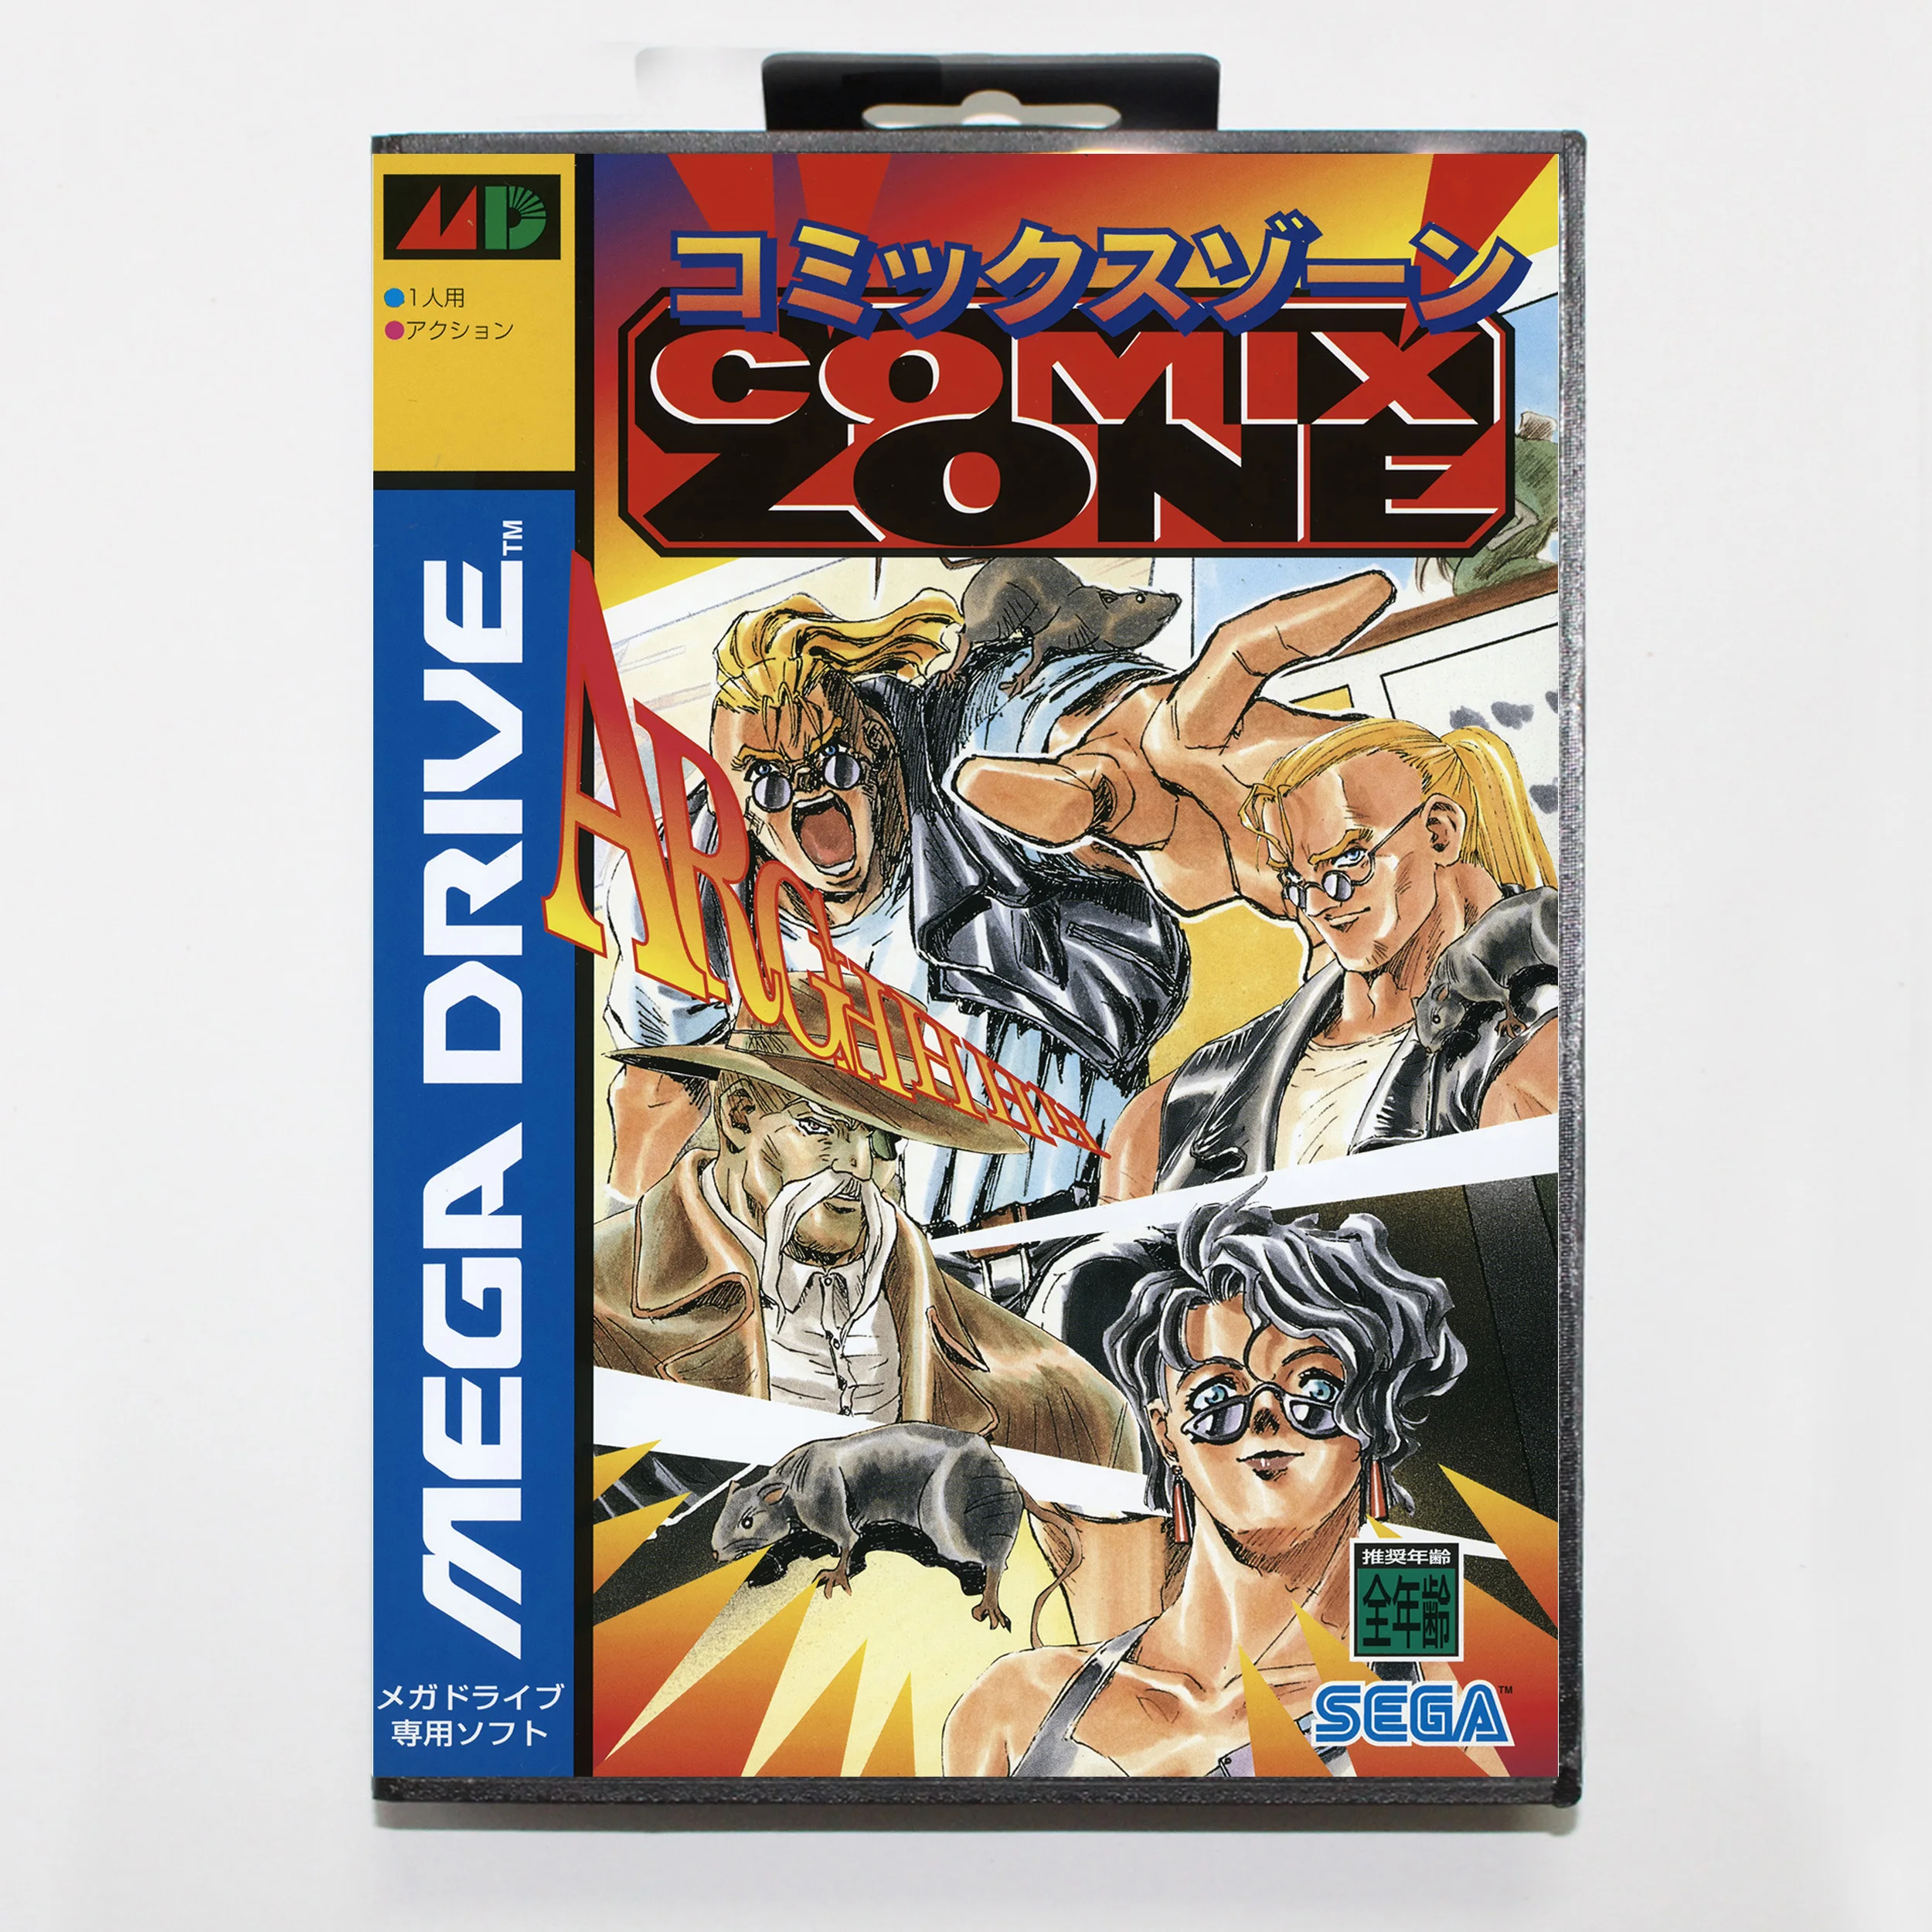 

Игровая карта Comix Zone 16bit MD для Sega Mega Drive/ Genesis с коробкой JP